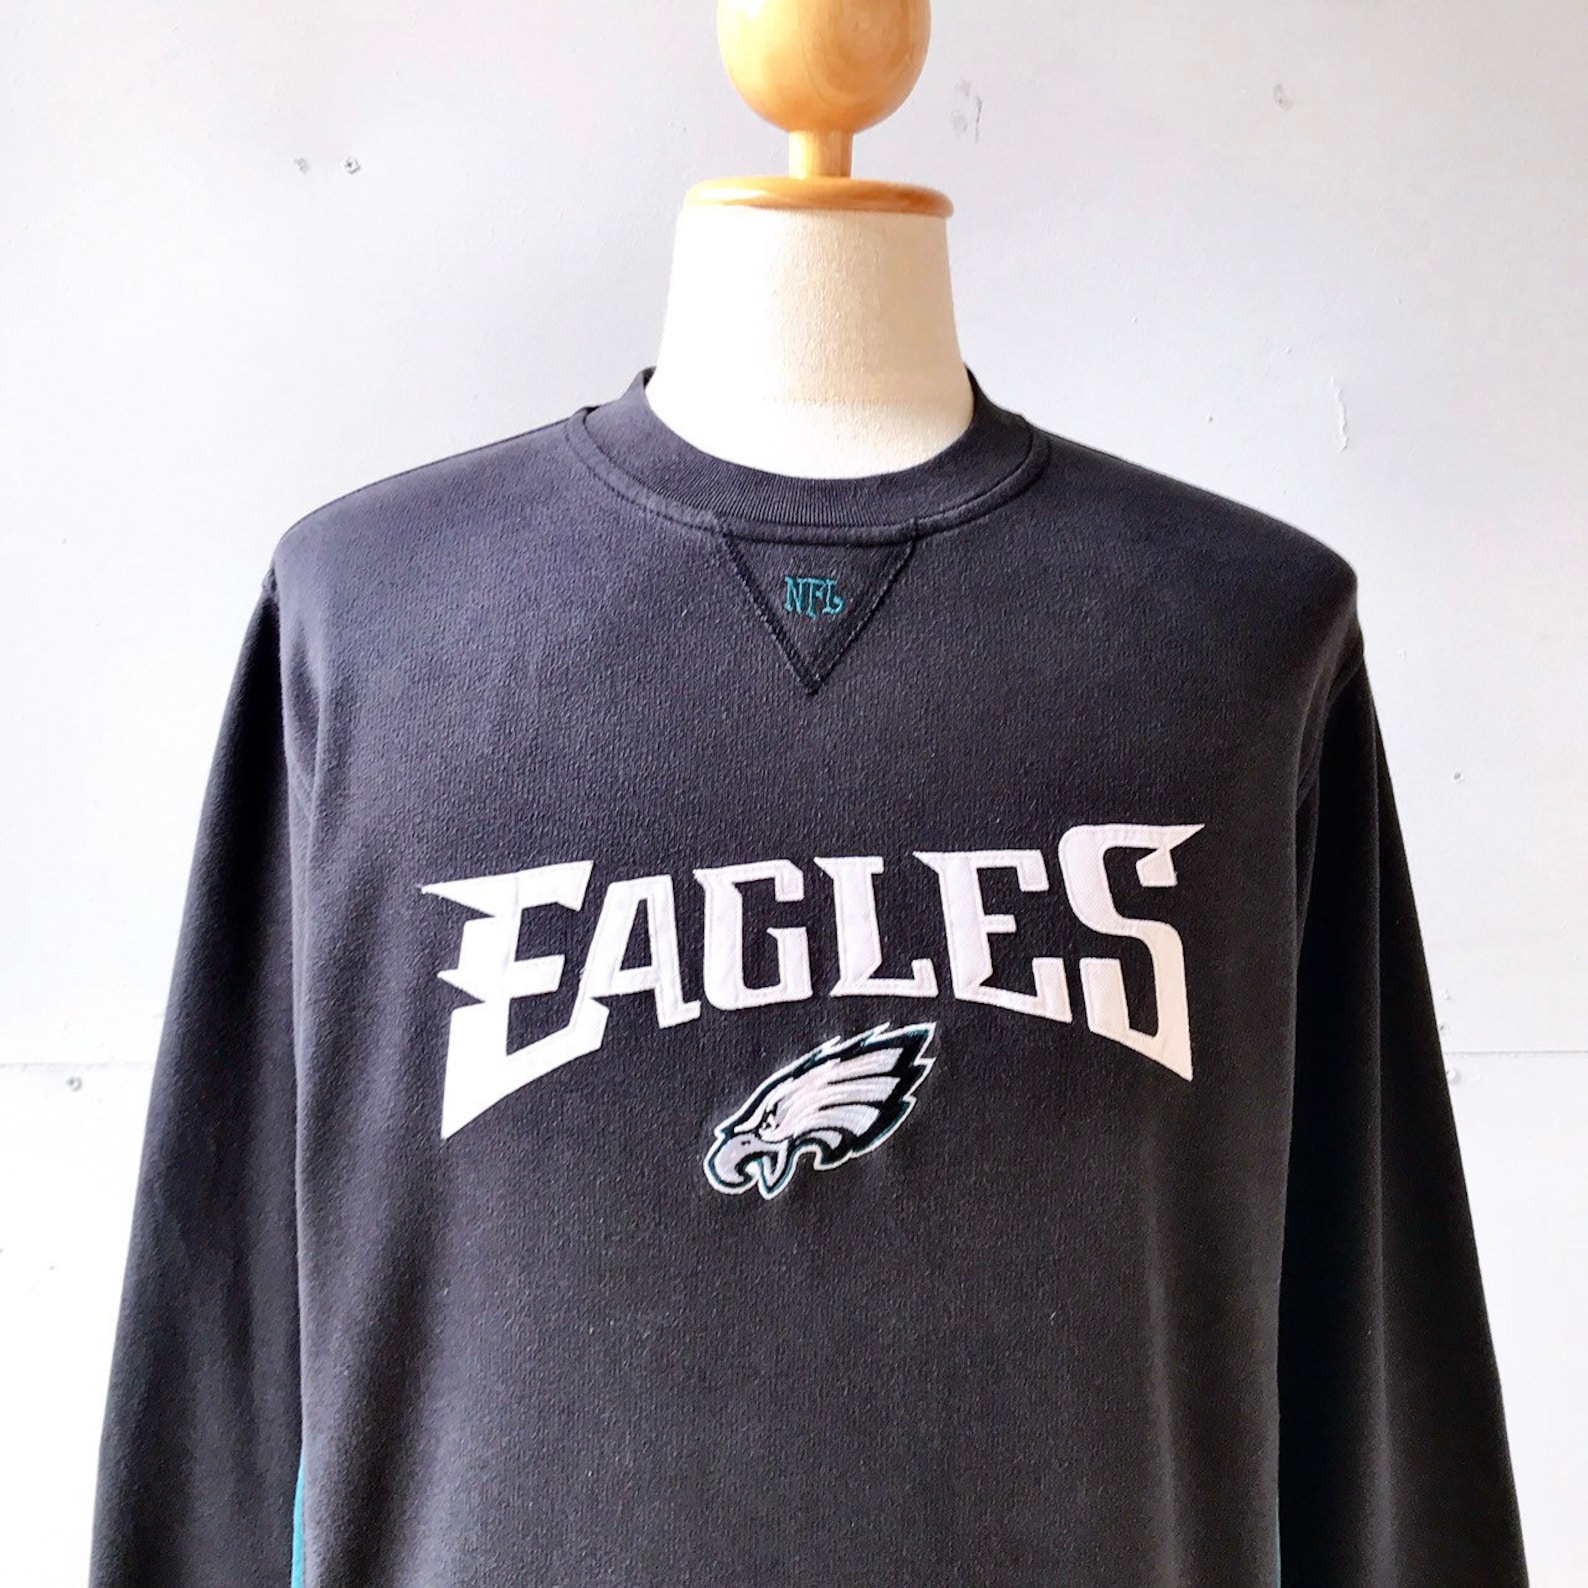 Vintage Philadelphia Eagles NFL Football Sweatshirt size M | Etsy